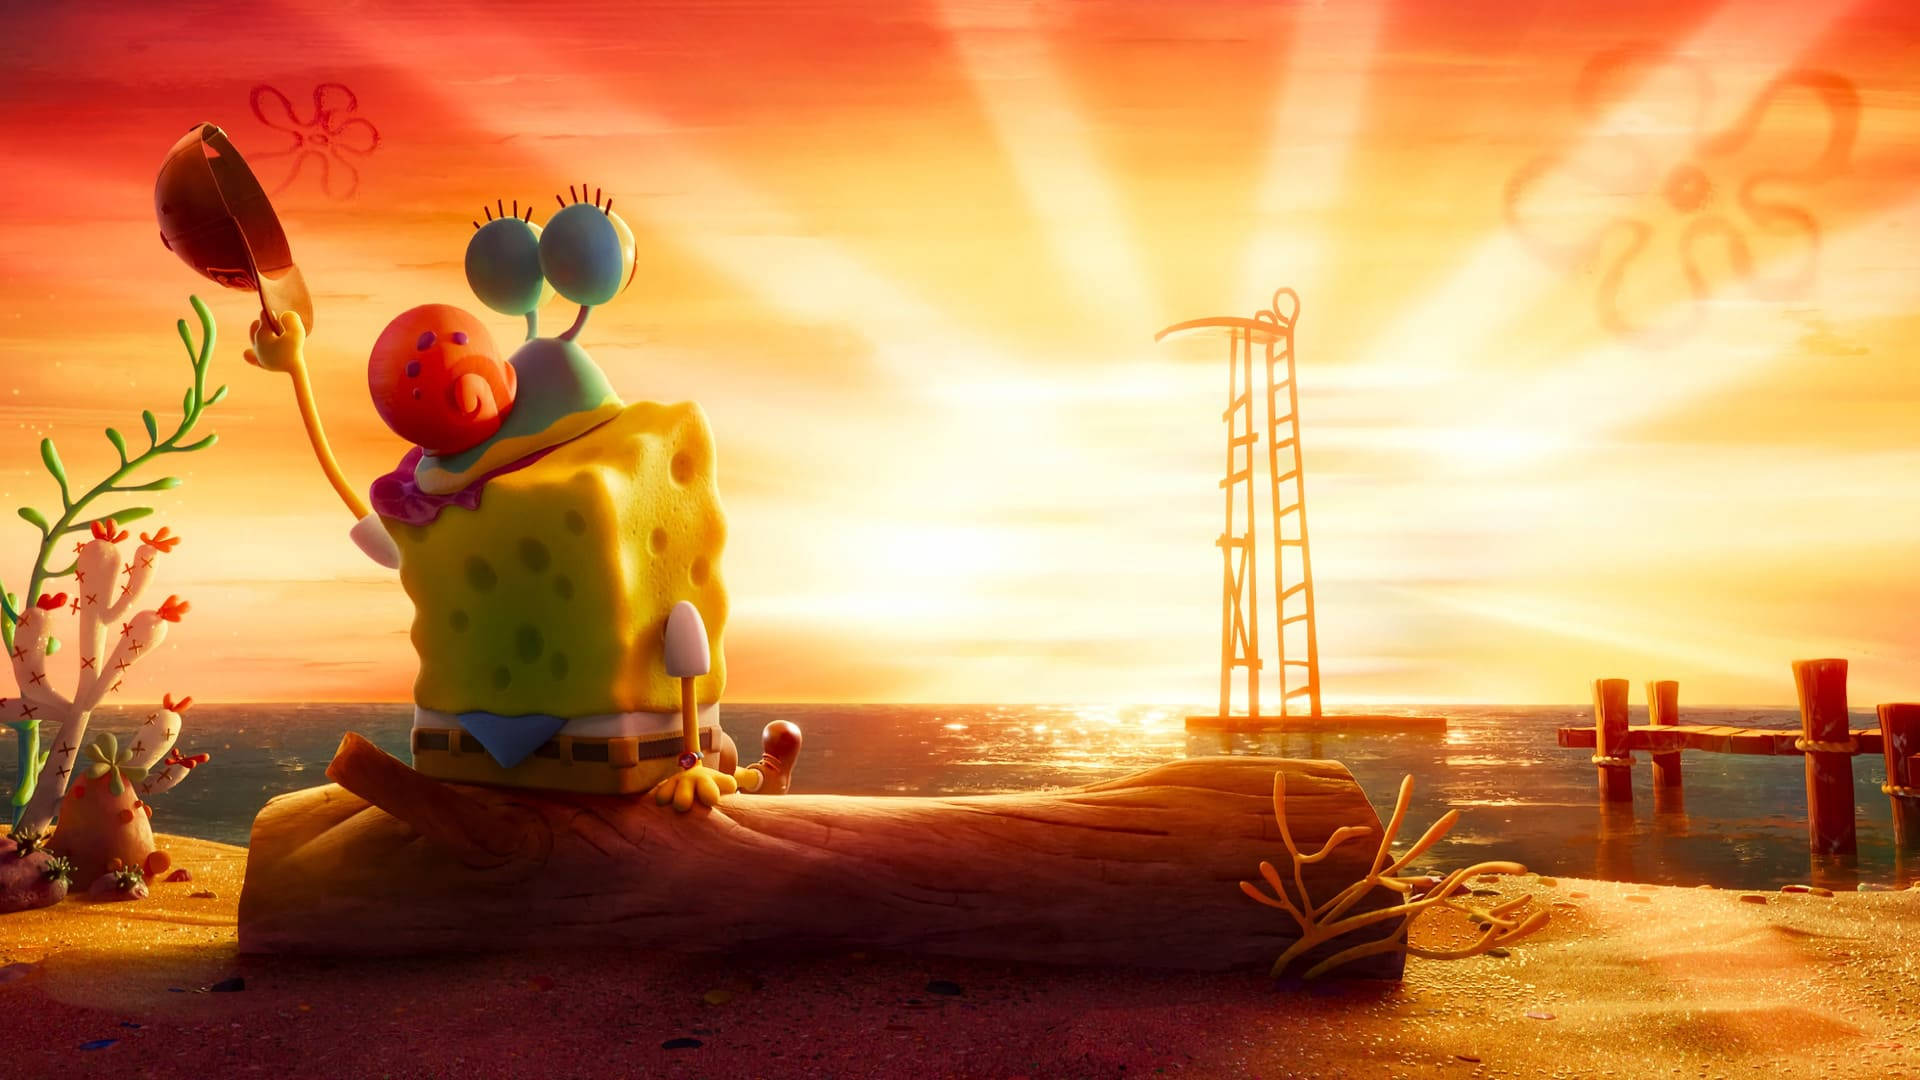 Sunset Aesthetic Spongebob Wallpaper